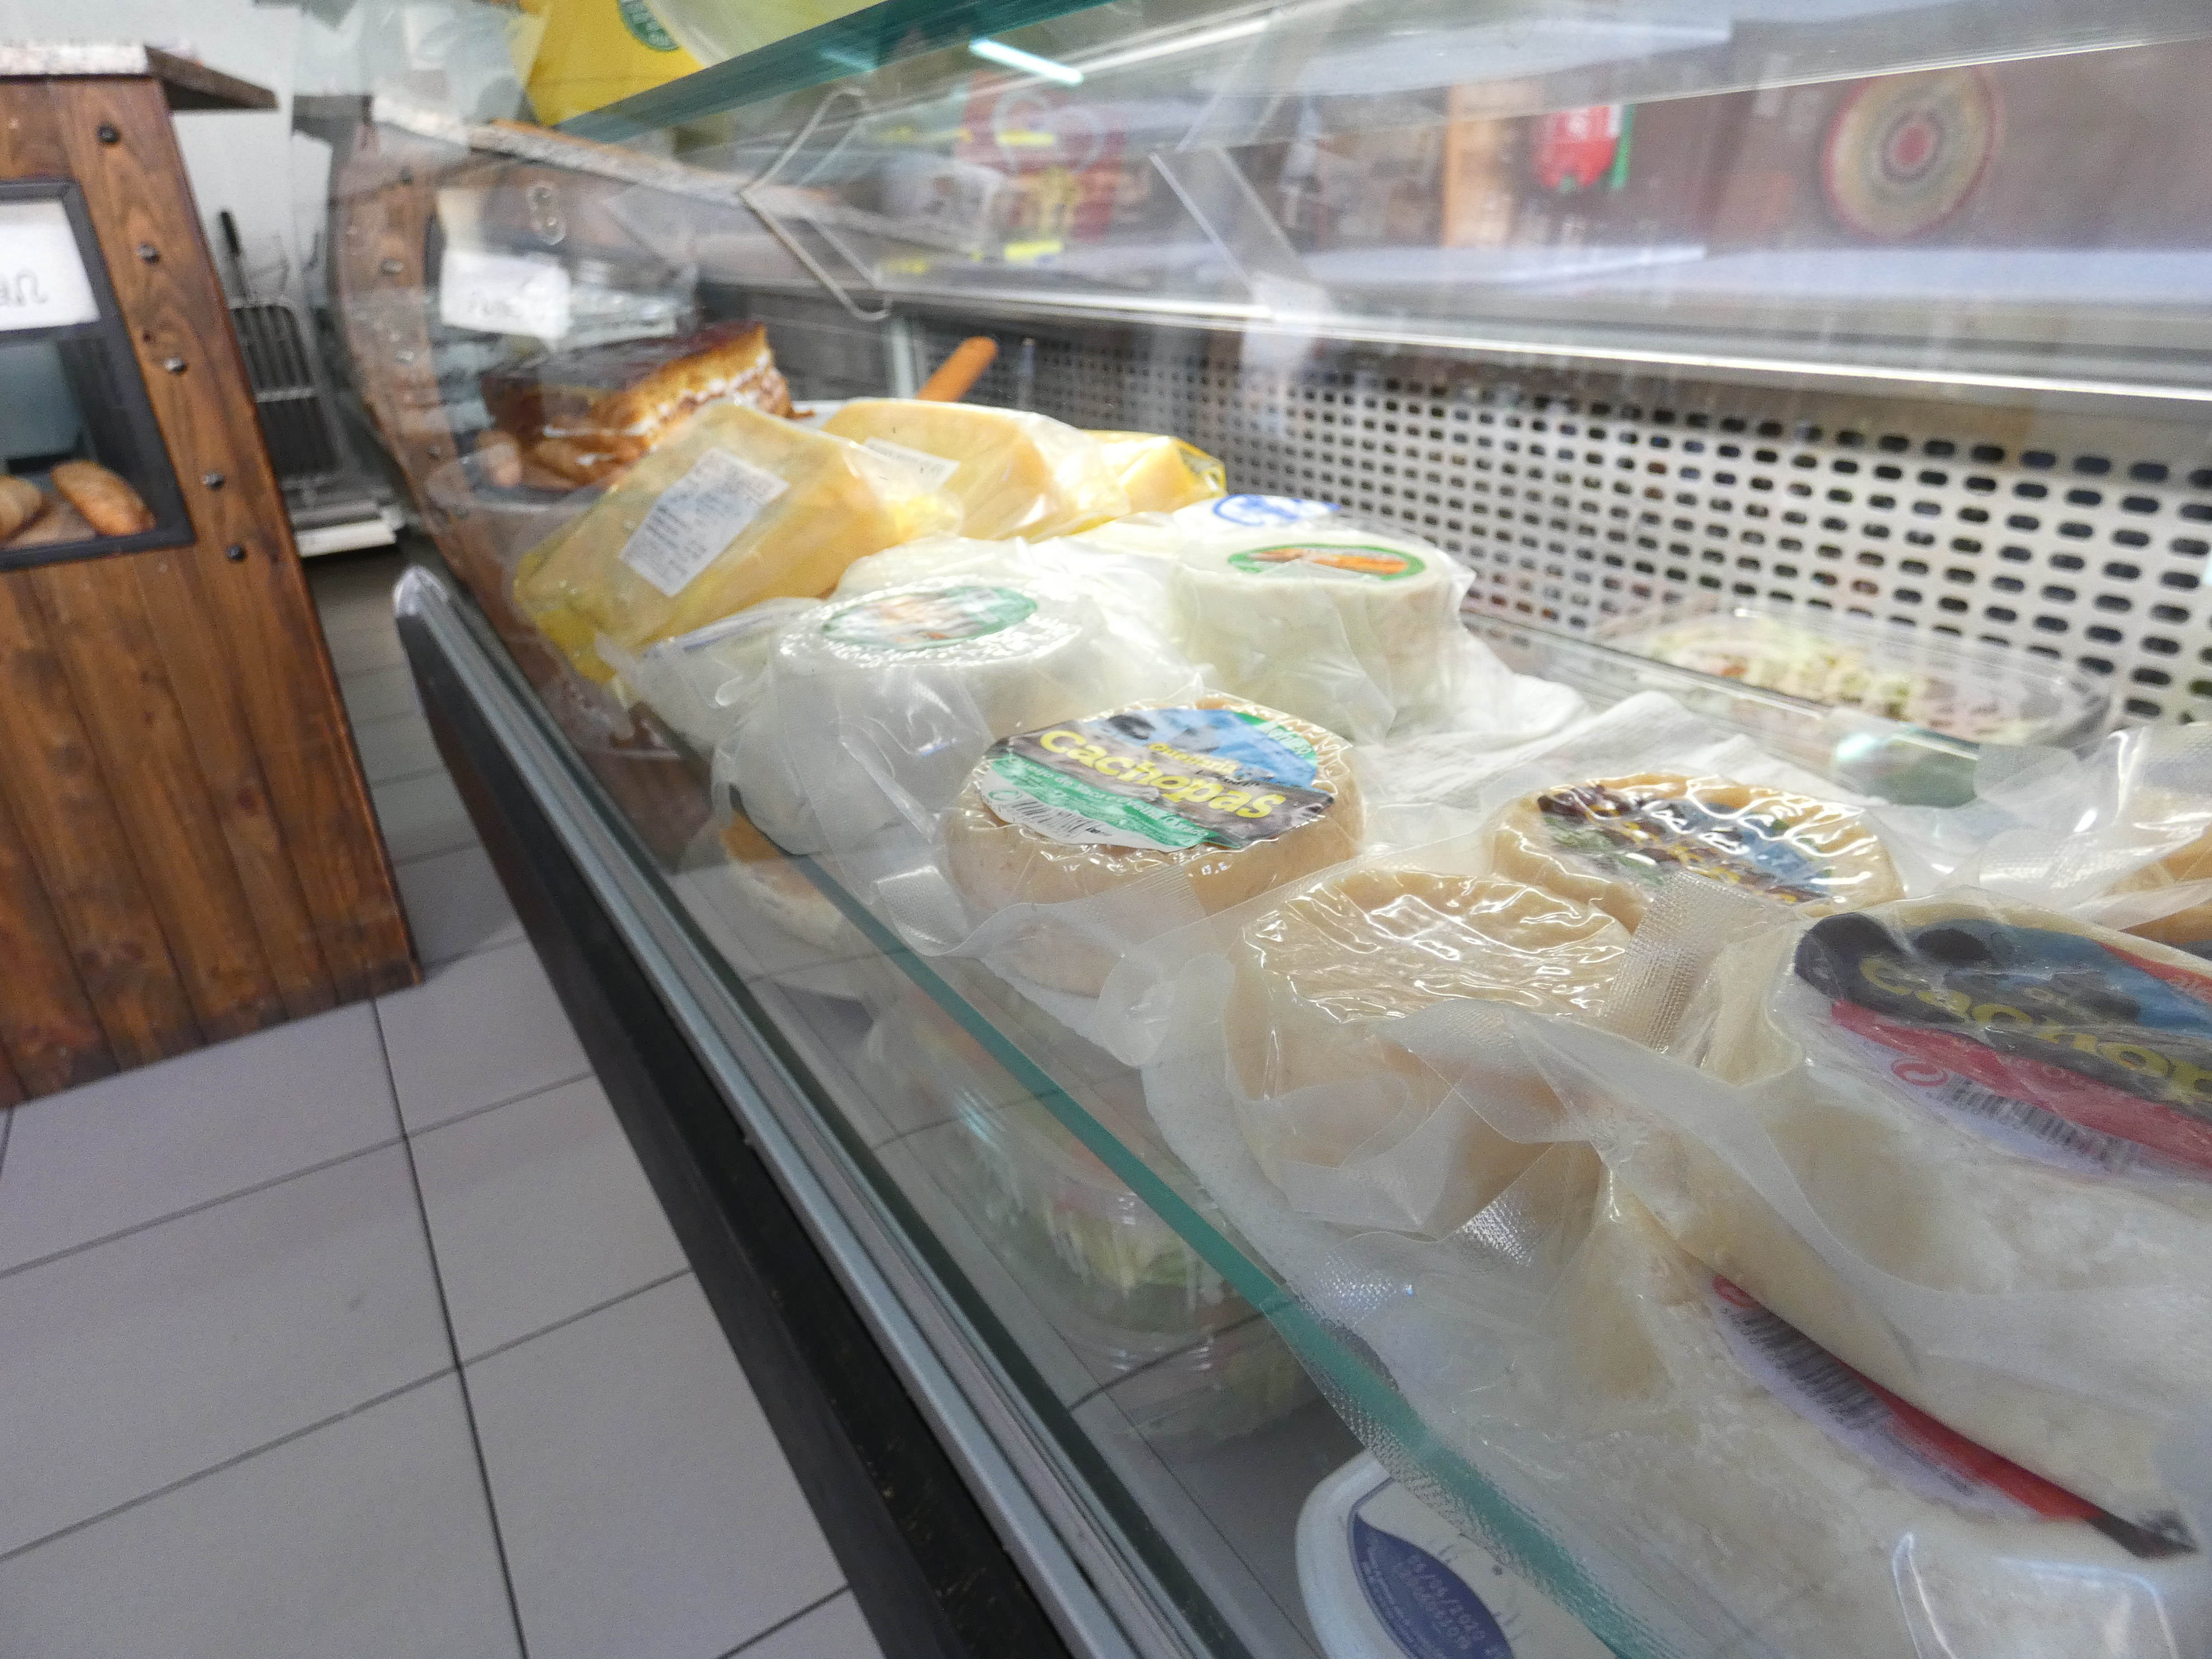 vitrina refrigerada con productos lácteos típicos portugueses (quesos, mantequillas)